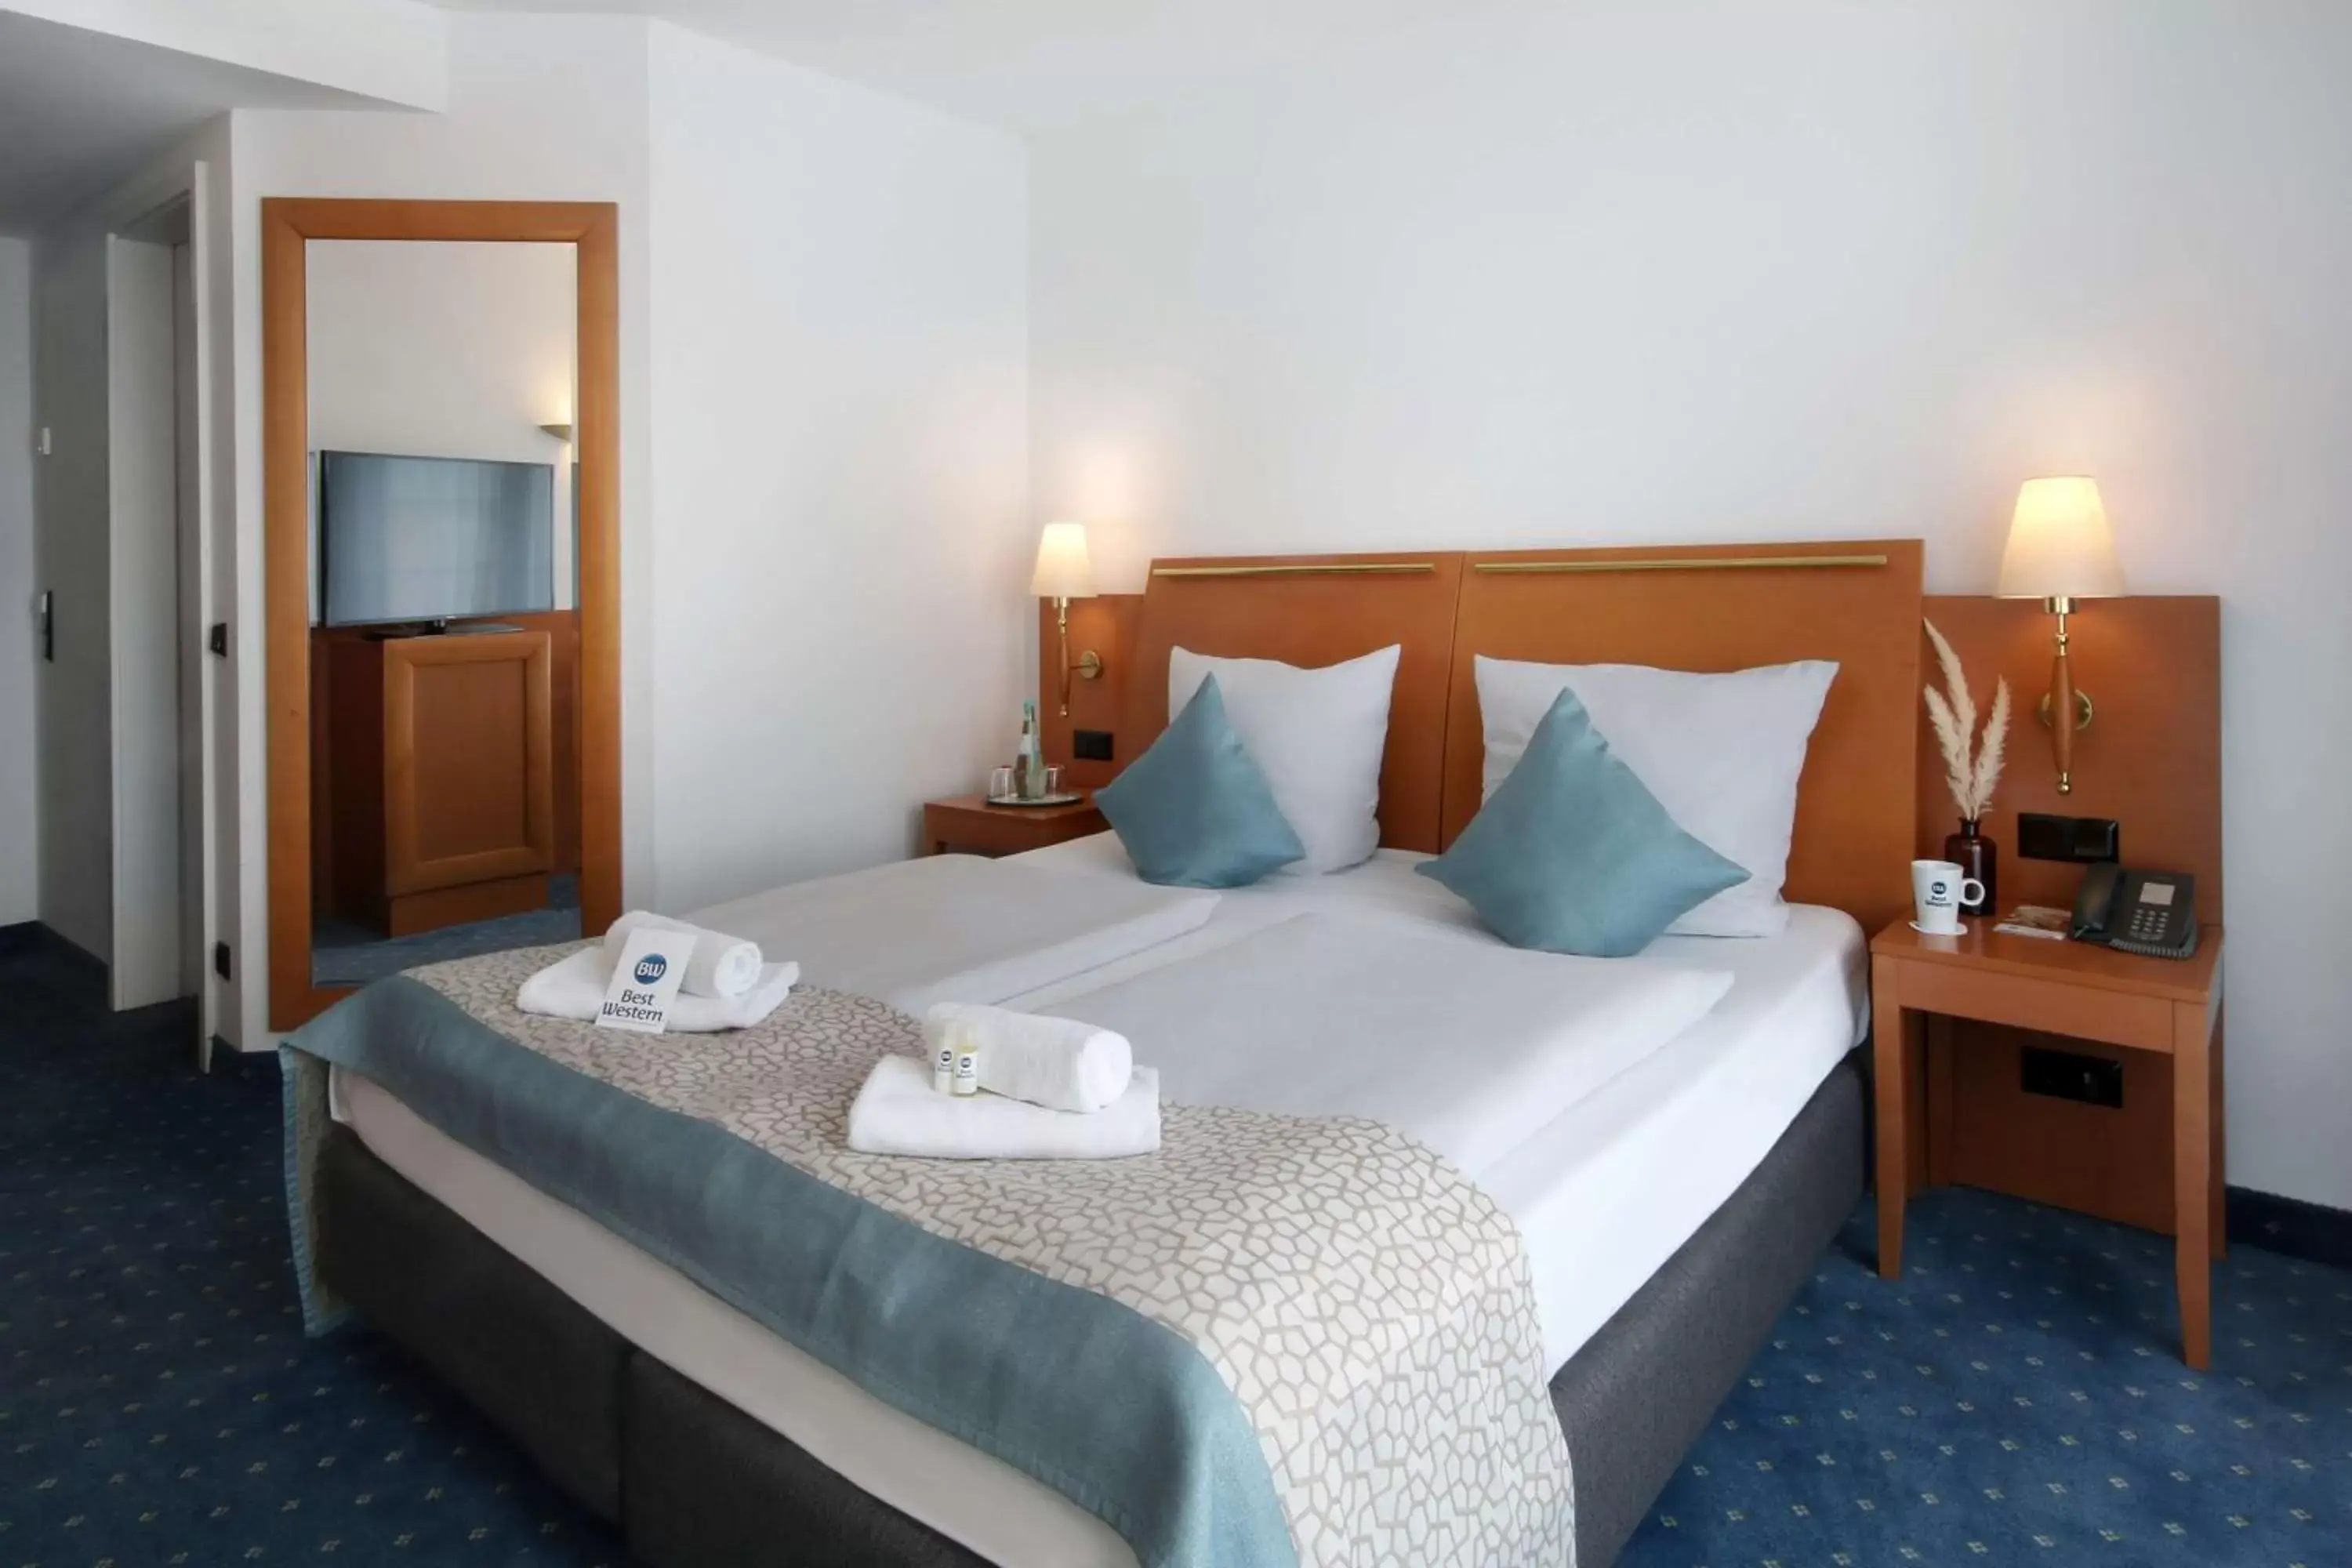 Bedroom, Bed in Best Western Hotel Halle-Merseburg